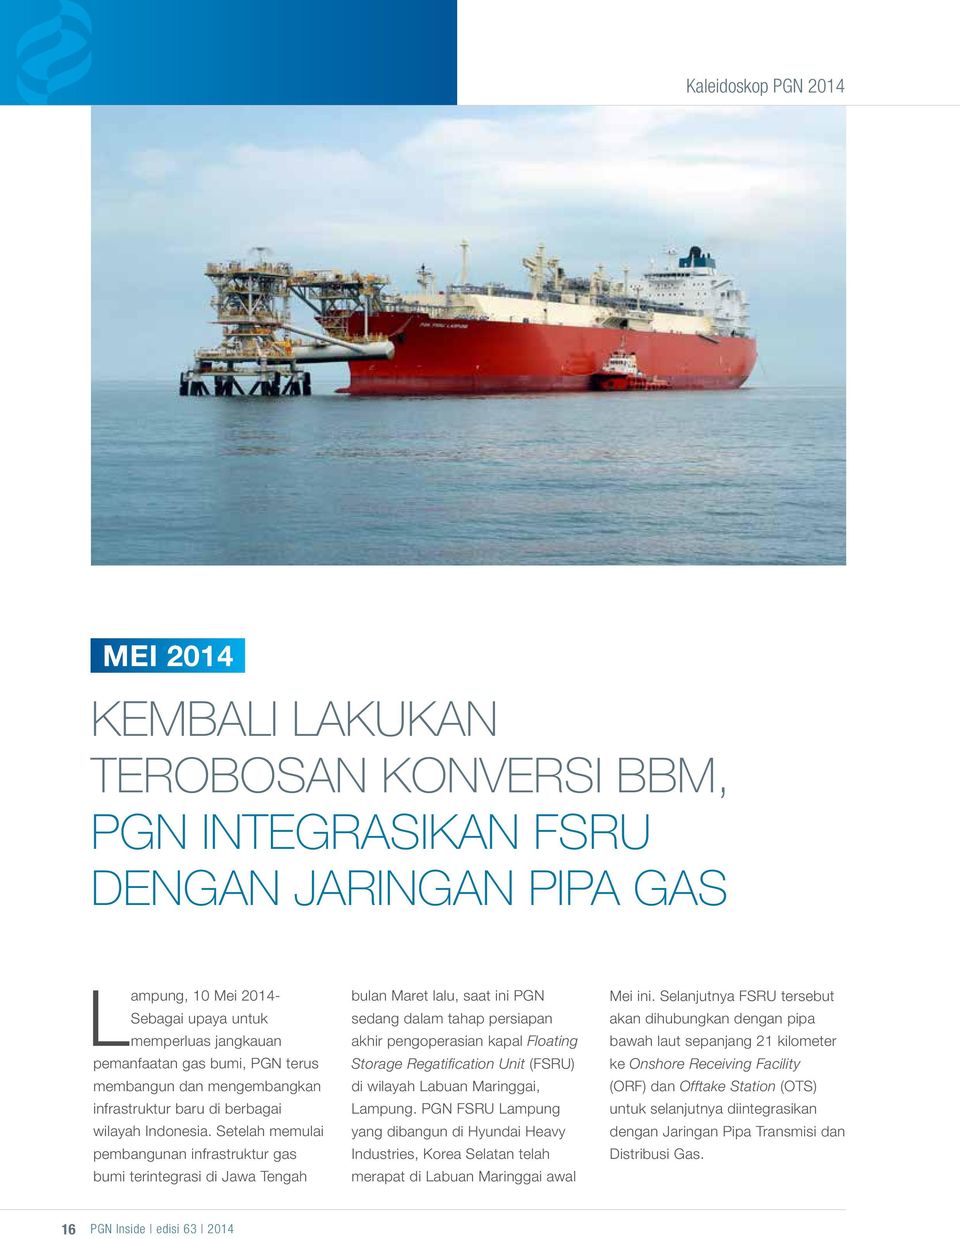 Setelah memulai pembangunan infrastruktur gas bumi terintegrasi di Jawa Tengah bulan Maret lalu, saat ini PGN sedang dalam tahap persiapan akhir pengoperasian kapal Floating Storage Regatification